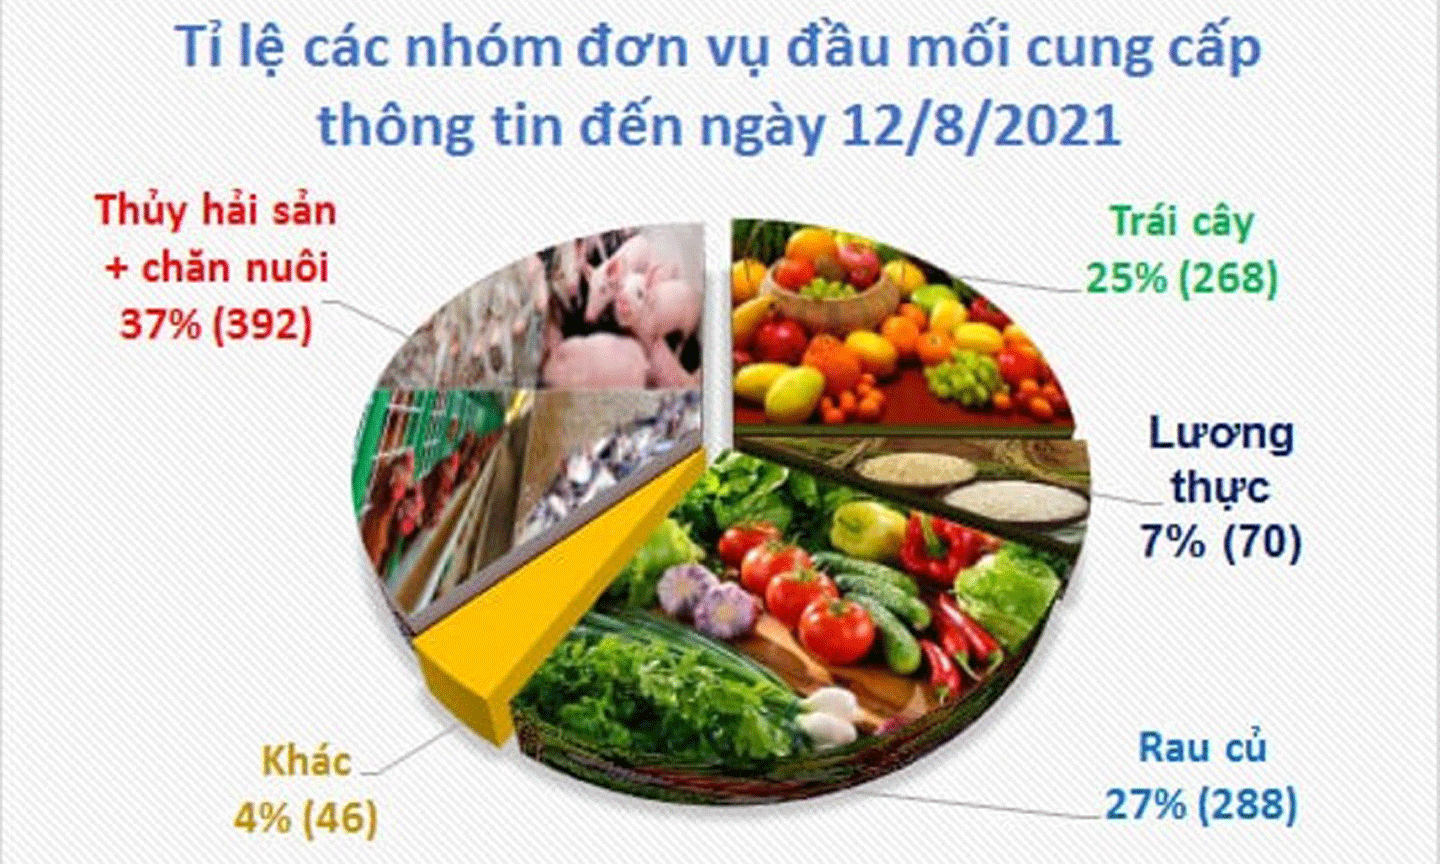 Tỷ lệ các nhóm đơn vị đầu mối cung cấp thông tin nông sản đến ngày 12/8/2021